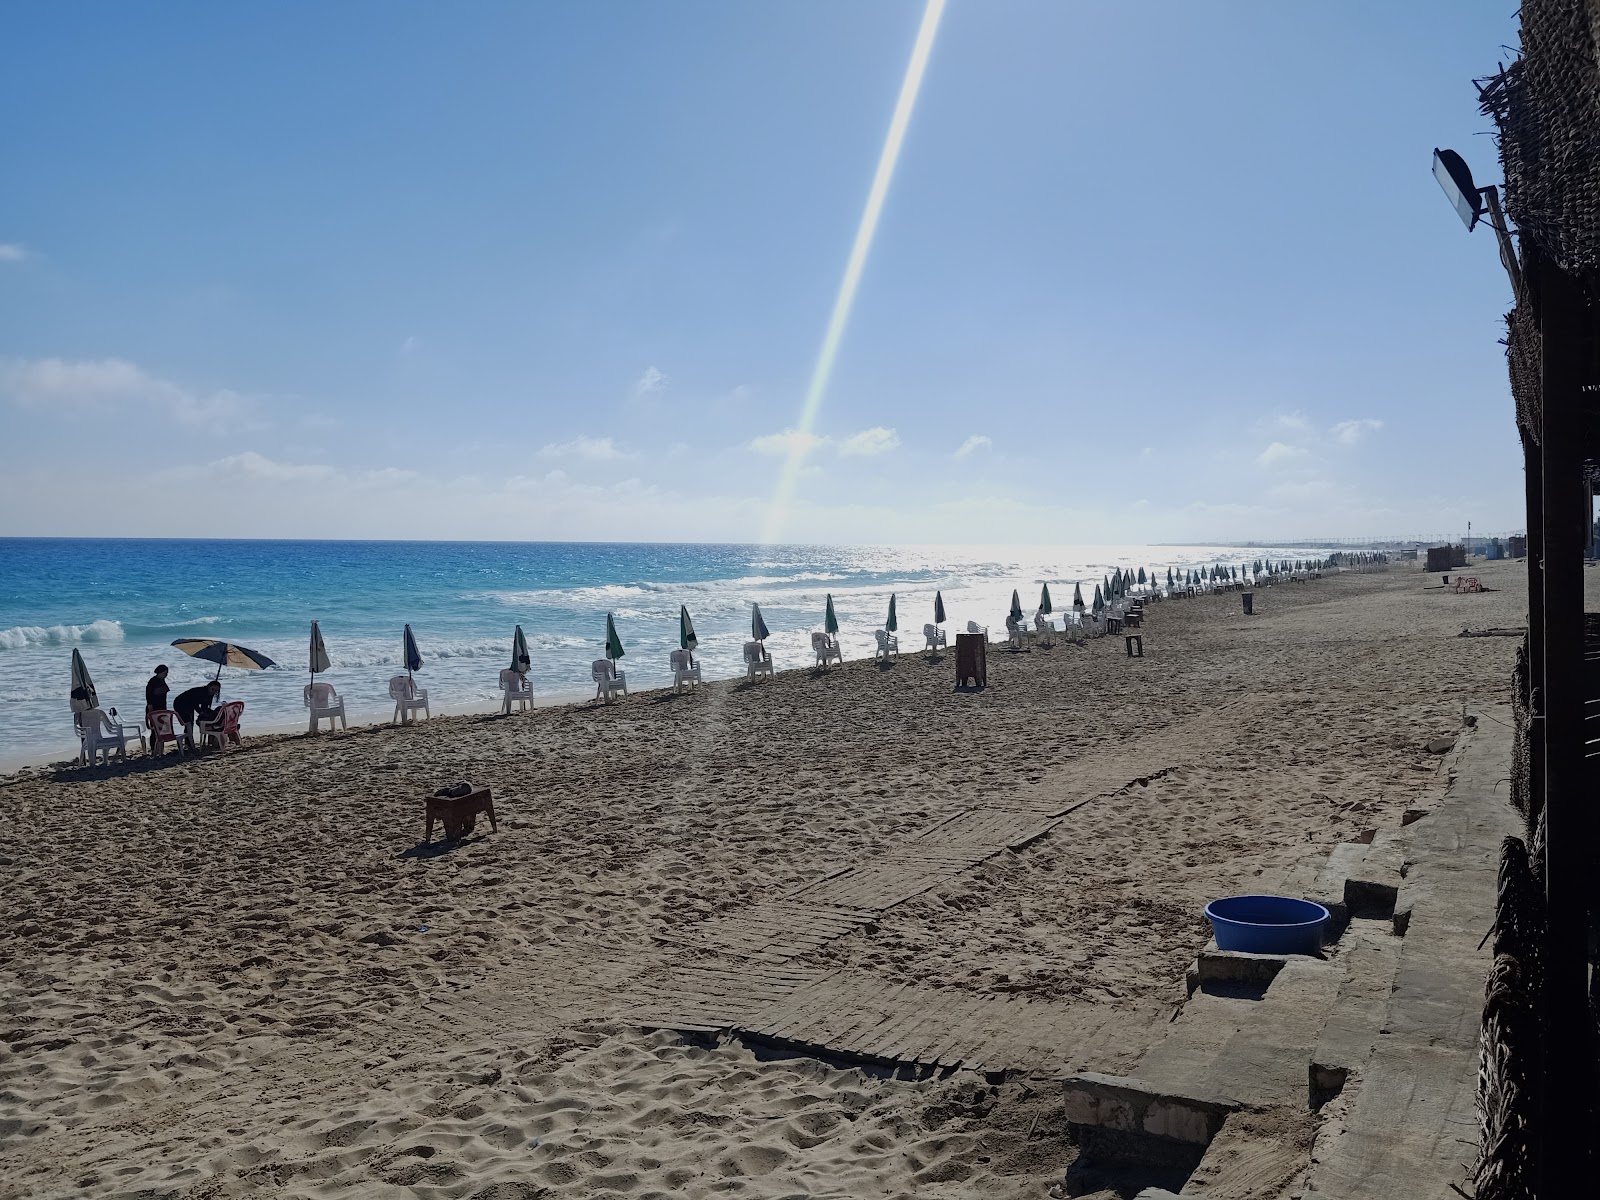 Dora Al Abyad Beach'in fotoğrafı geniş plaj ile birlikte